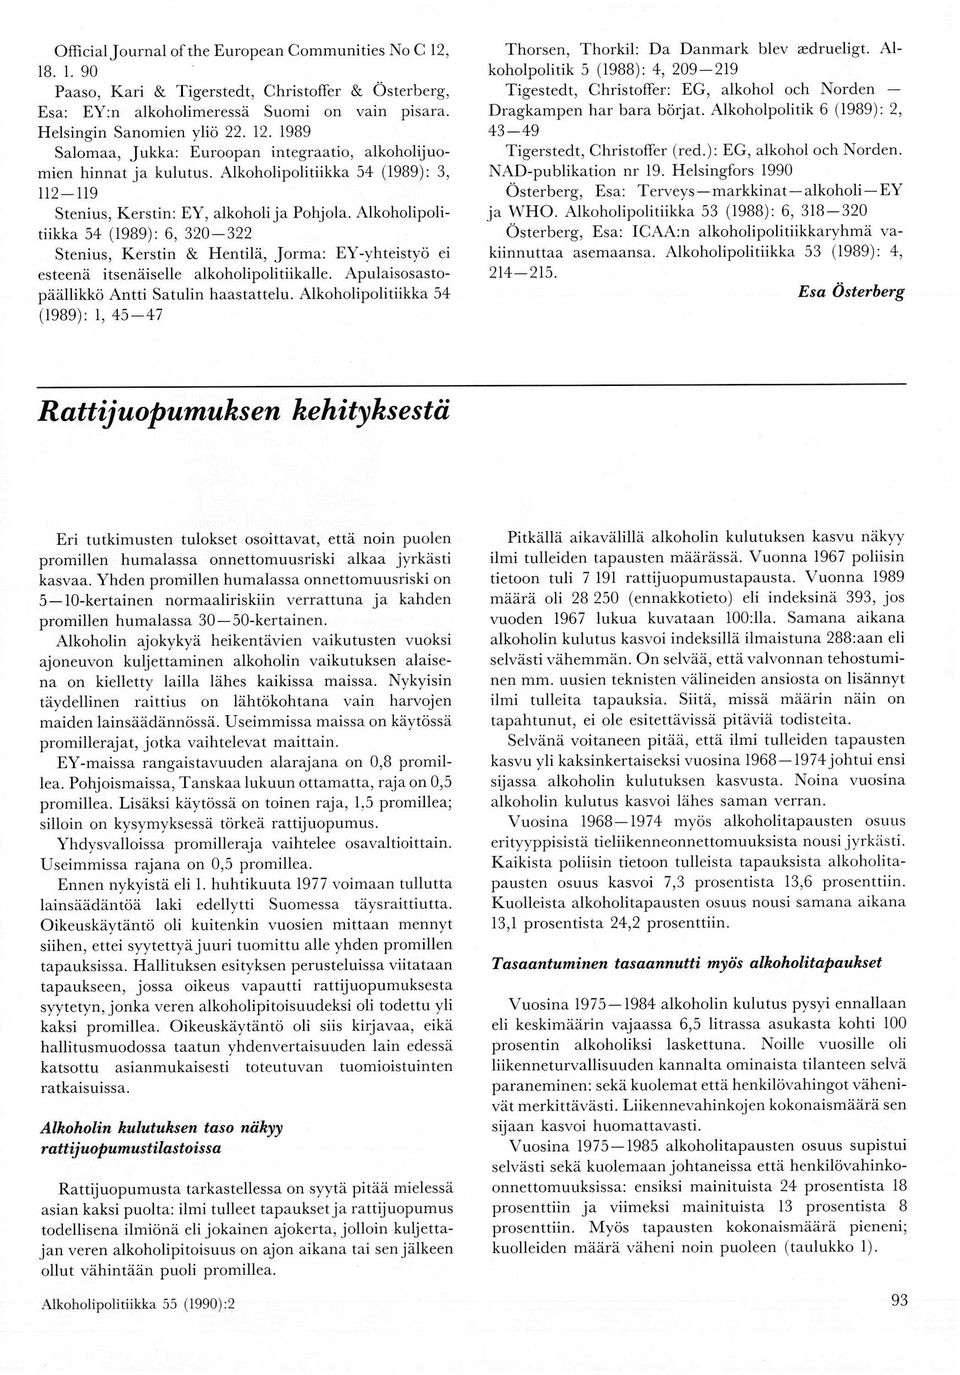 Alkoholipolitiikka 54 (1989): 6, 320322 Stenius, Kerstin & Hentilä, Jorma: EYyhteistyö ei esteenä itsenäiselle alkoholipolitiikalle. Apulaisosastopäällikkö Antti Satulin haastattelu.